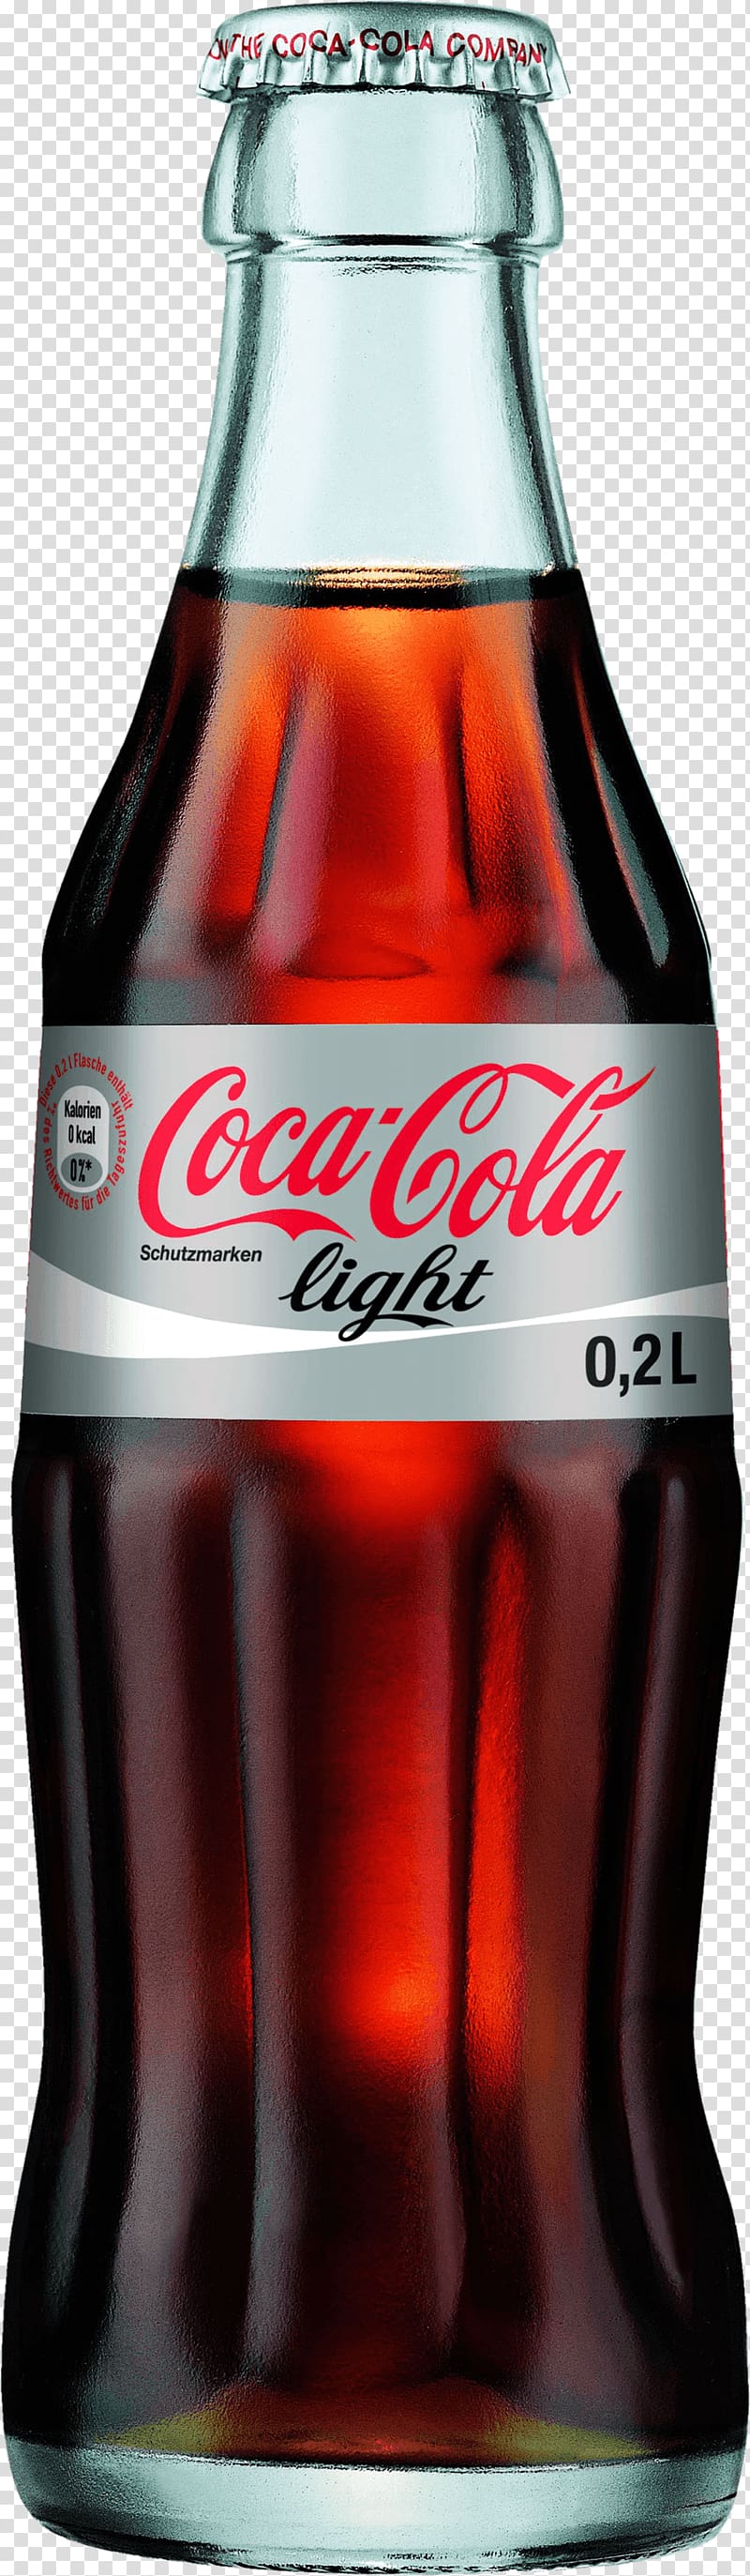 Coca-Cola light bottle, Coke Light Bottle Coca Cola transparent background PNG clipart